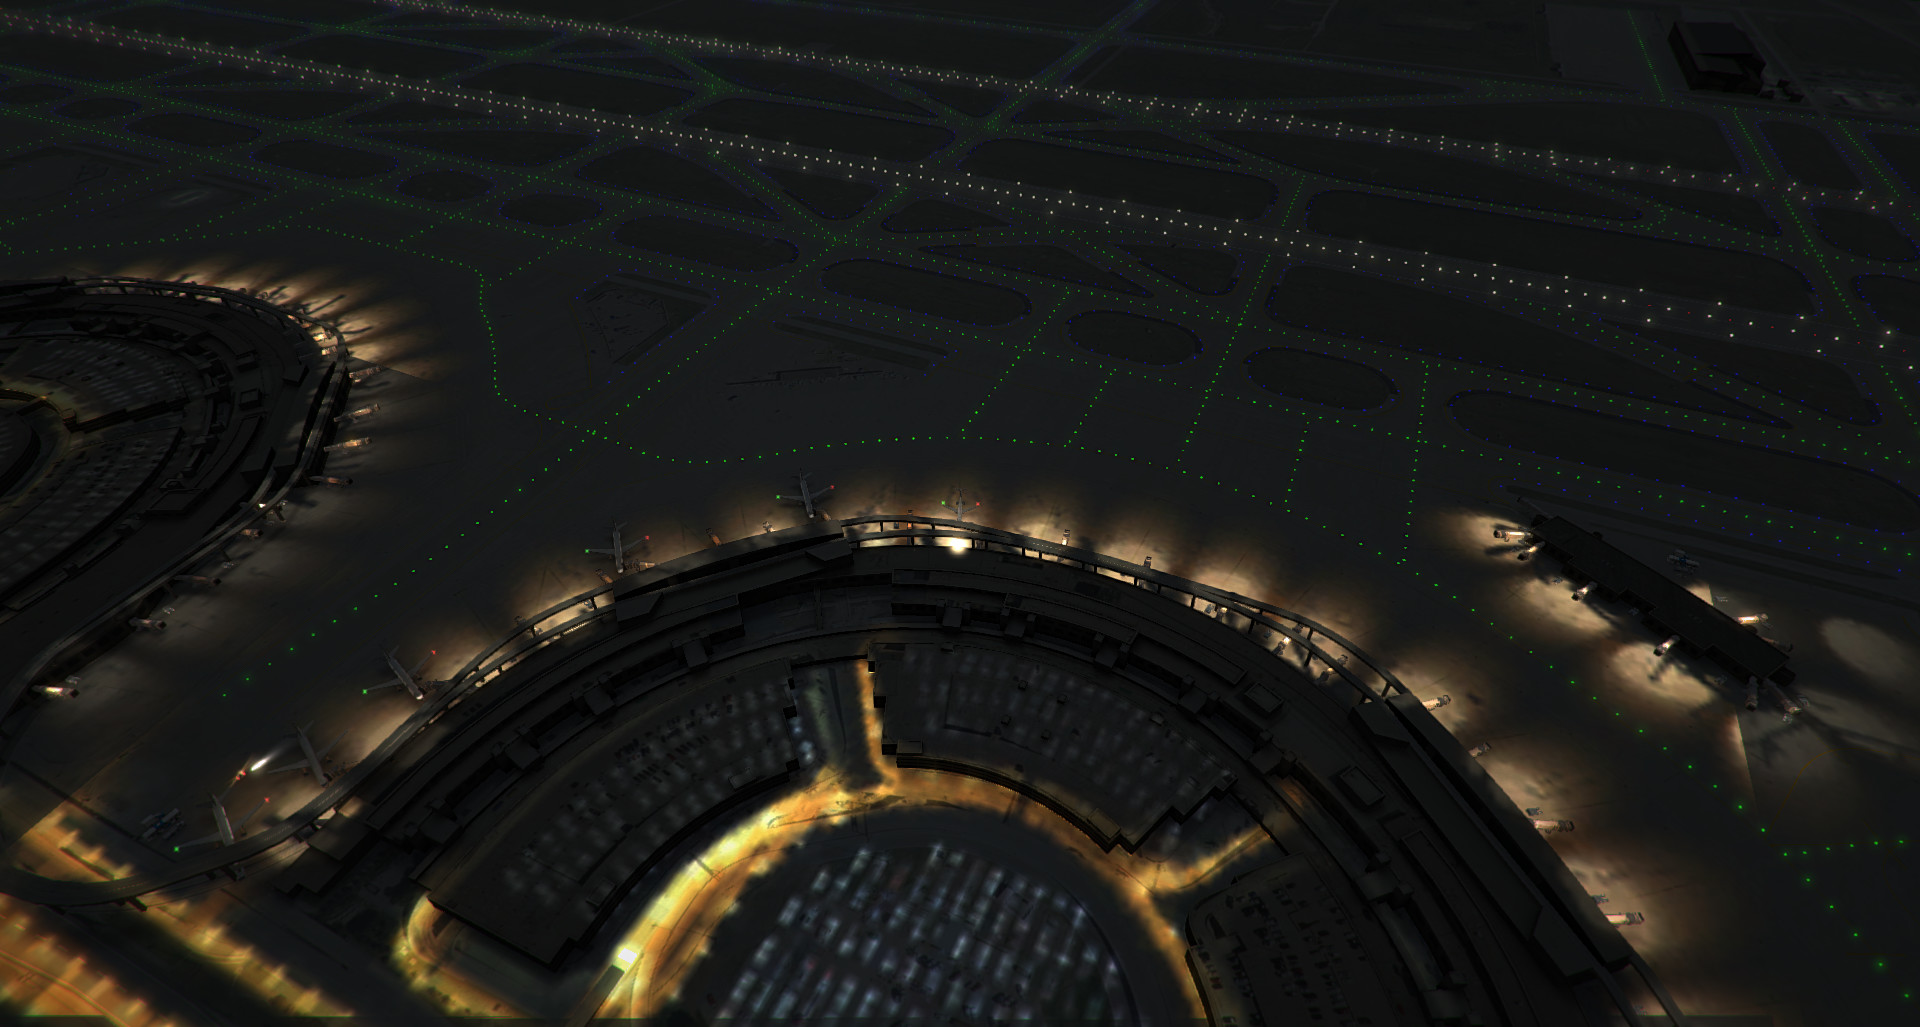 Tower!3D Pro - KDFW airport screenshot